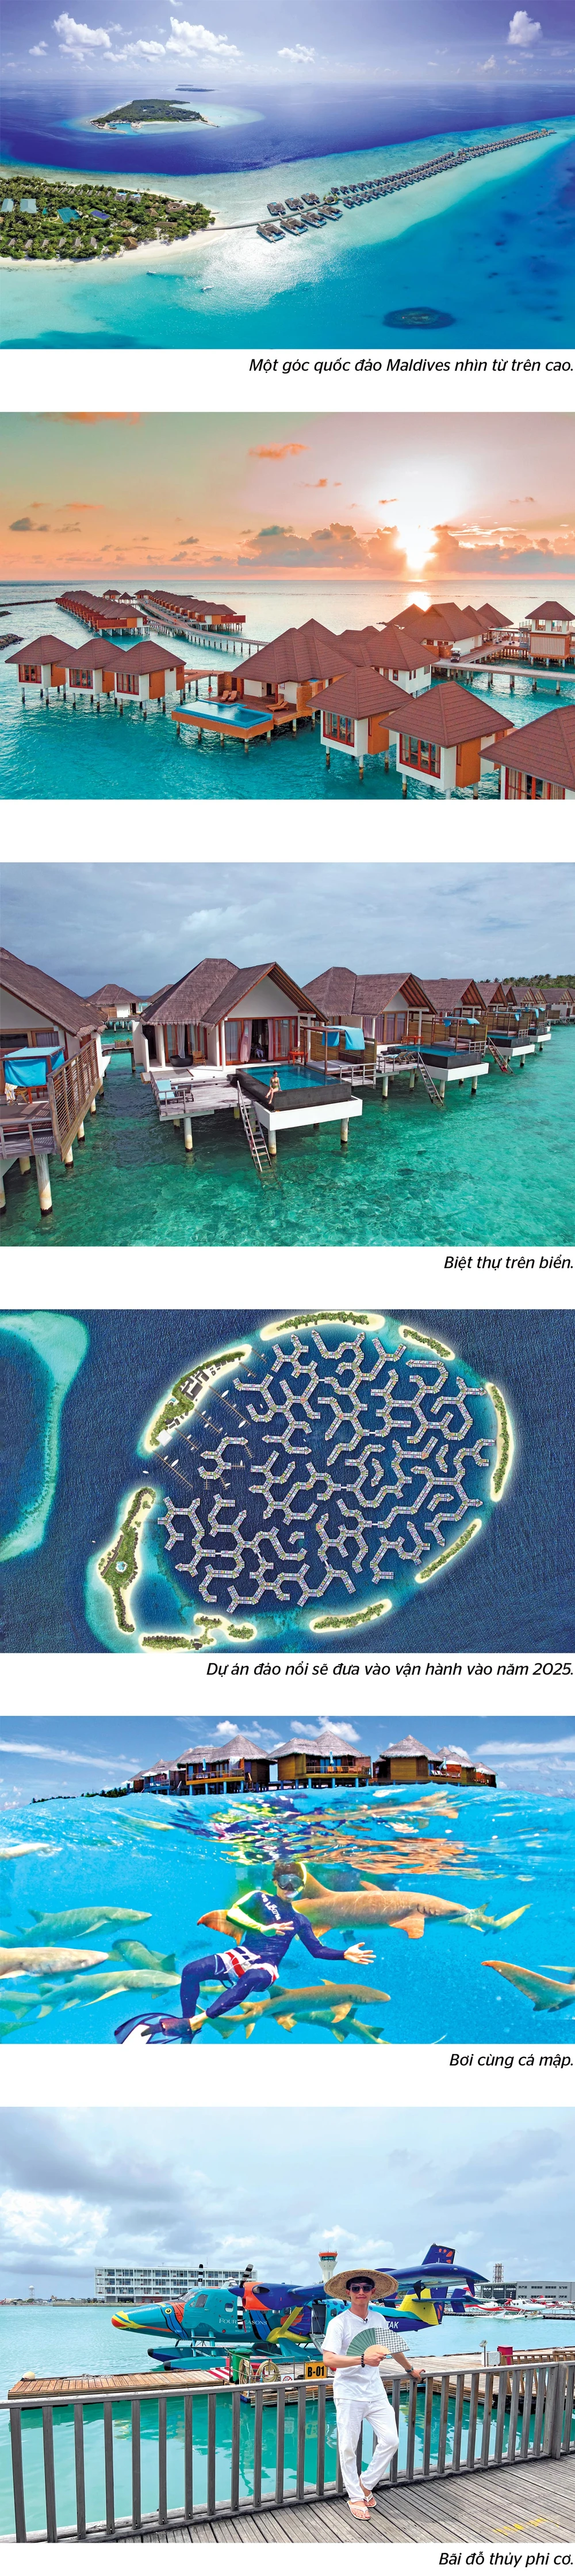 Đi Maldives mùa nào đẹp nhất? Thời tiết khí hậu 4 mùa ở Maldives